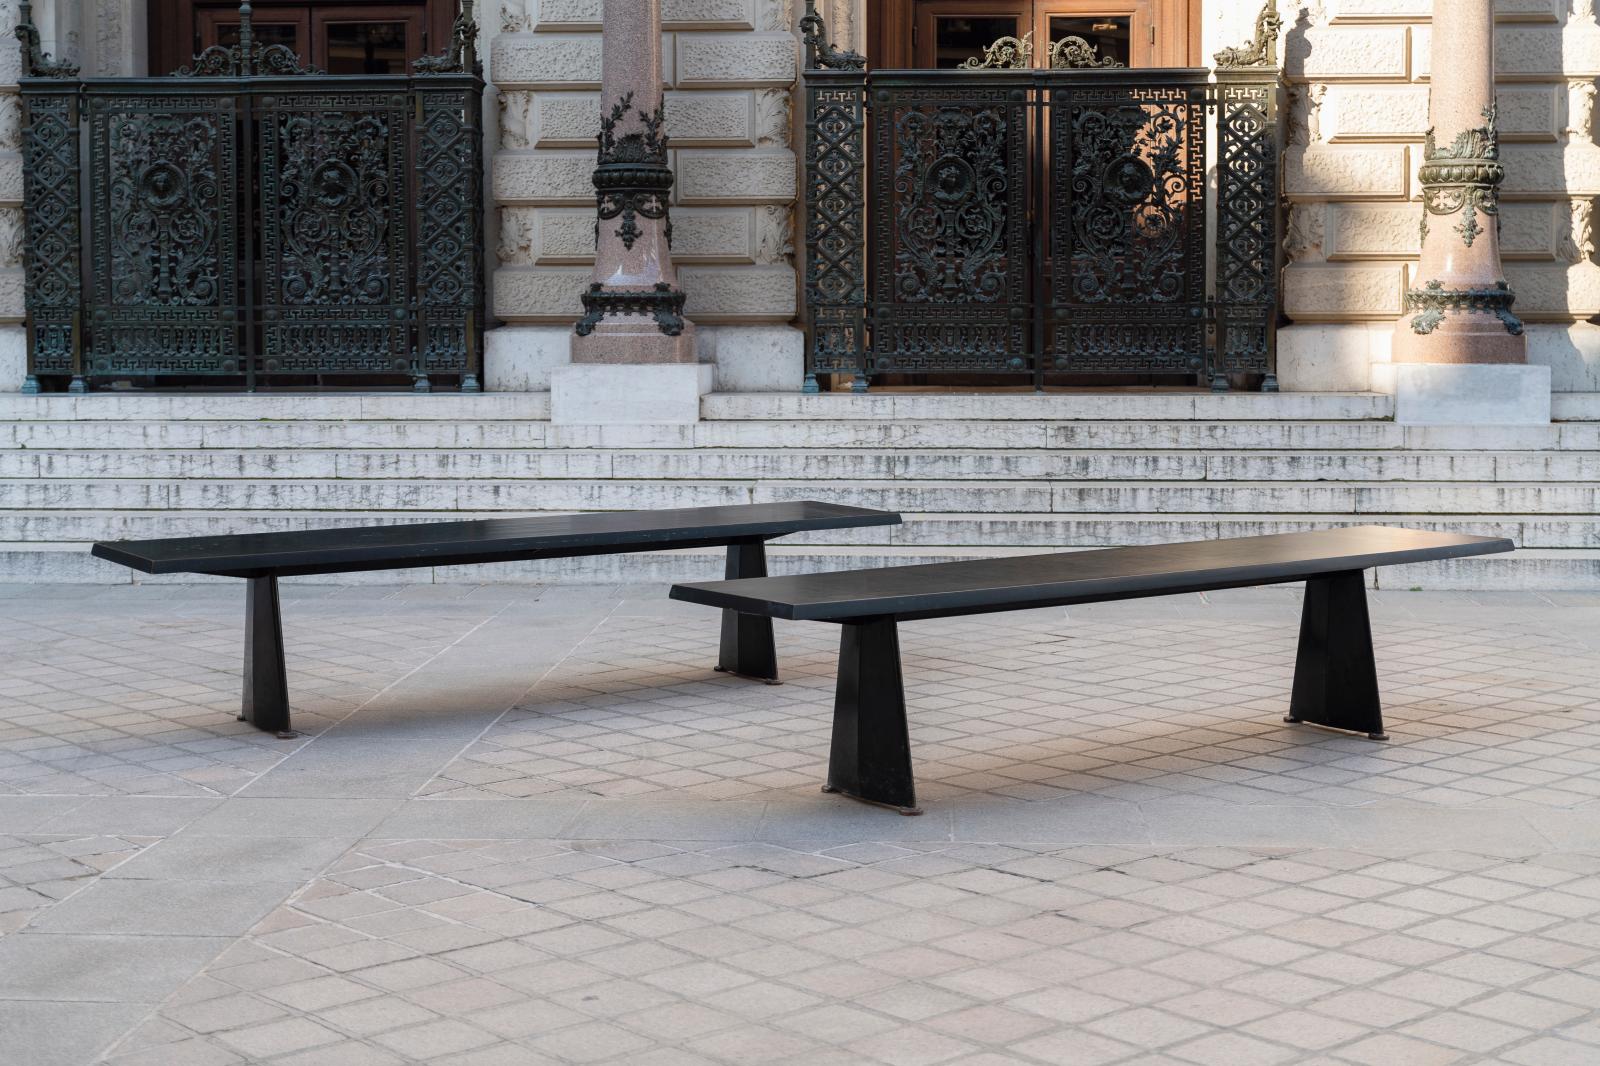 Deux tables de Jean Prouvé pour la cité universitaire d’Antony, l’essence du design